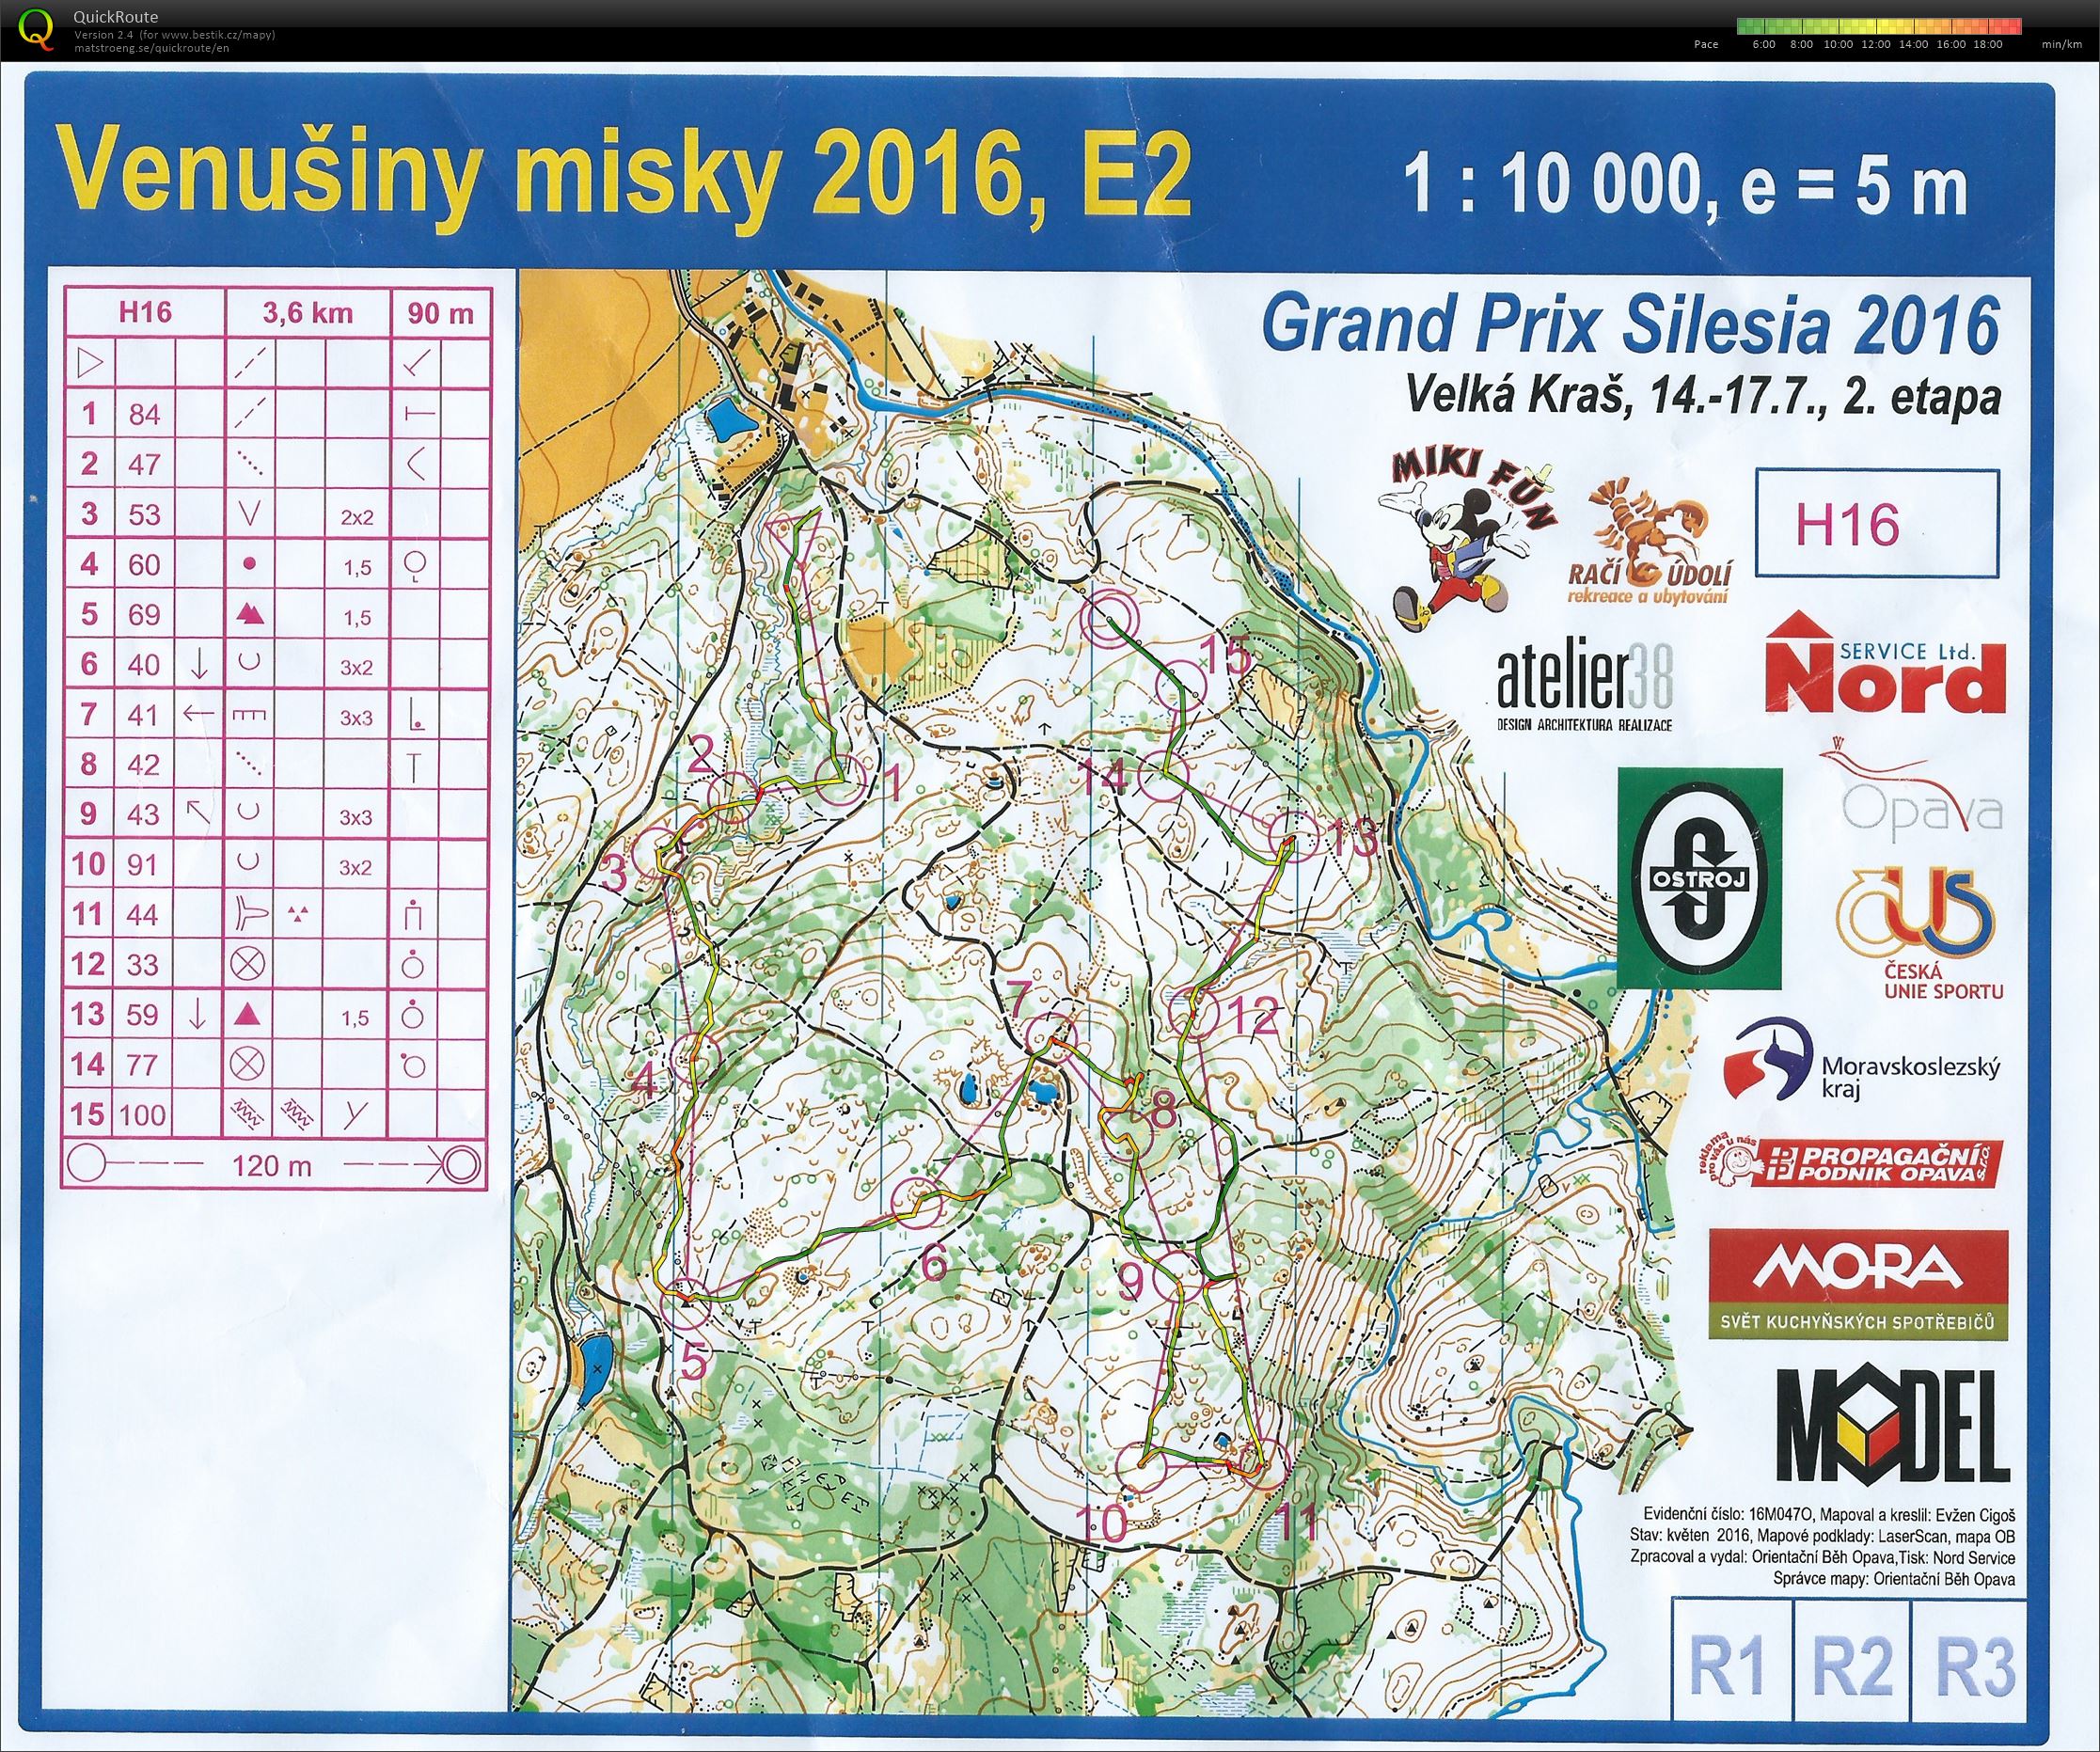 Grand Prix Silesia E2 (15.07.2016)